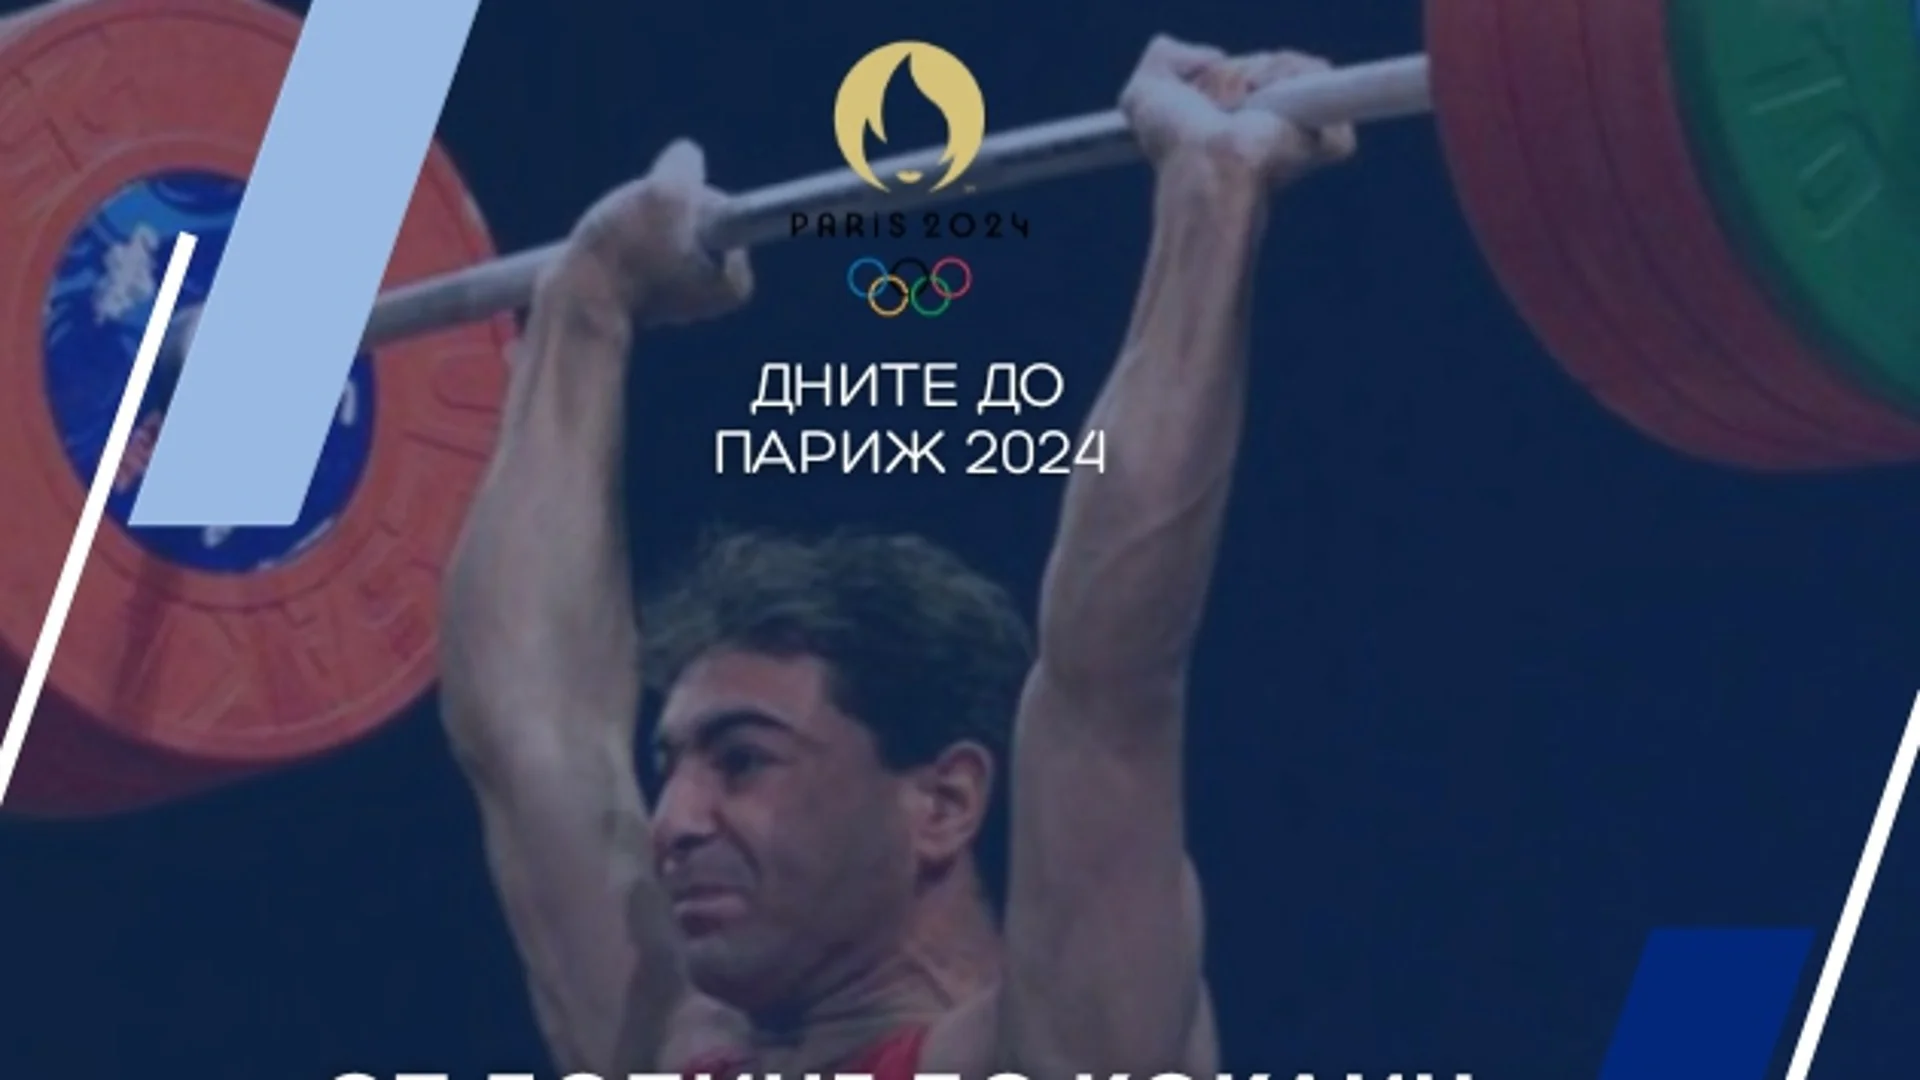 211 дни до Париж 2024: От допинг до кокаин - противоречивият олимпийски шампион на България (ВИДЕО)